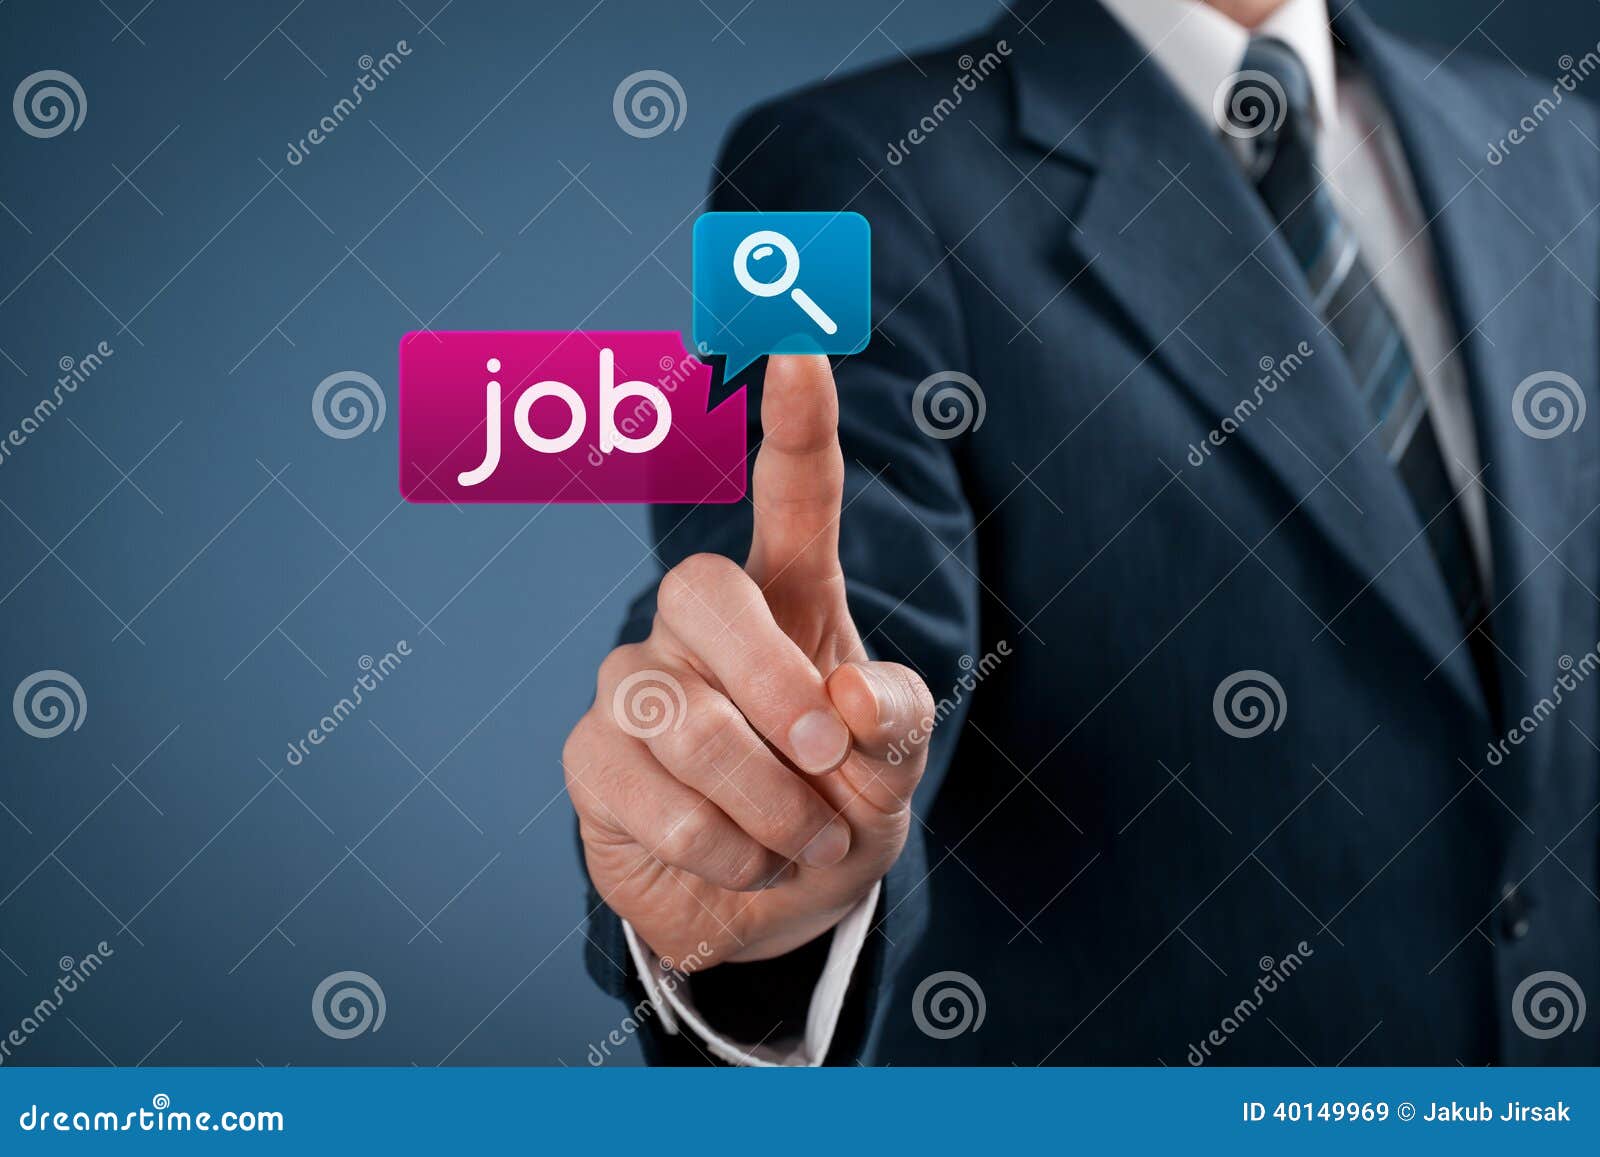 job seeking